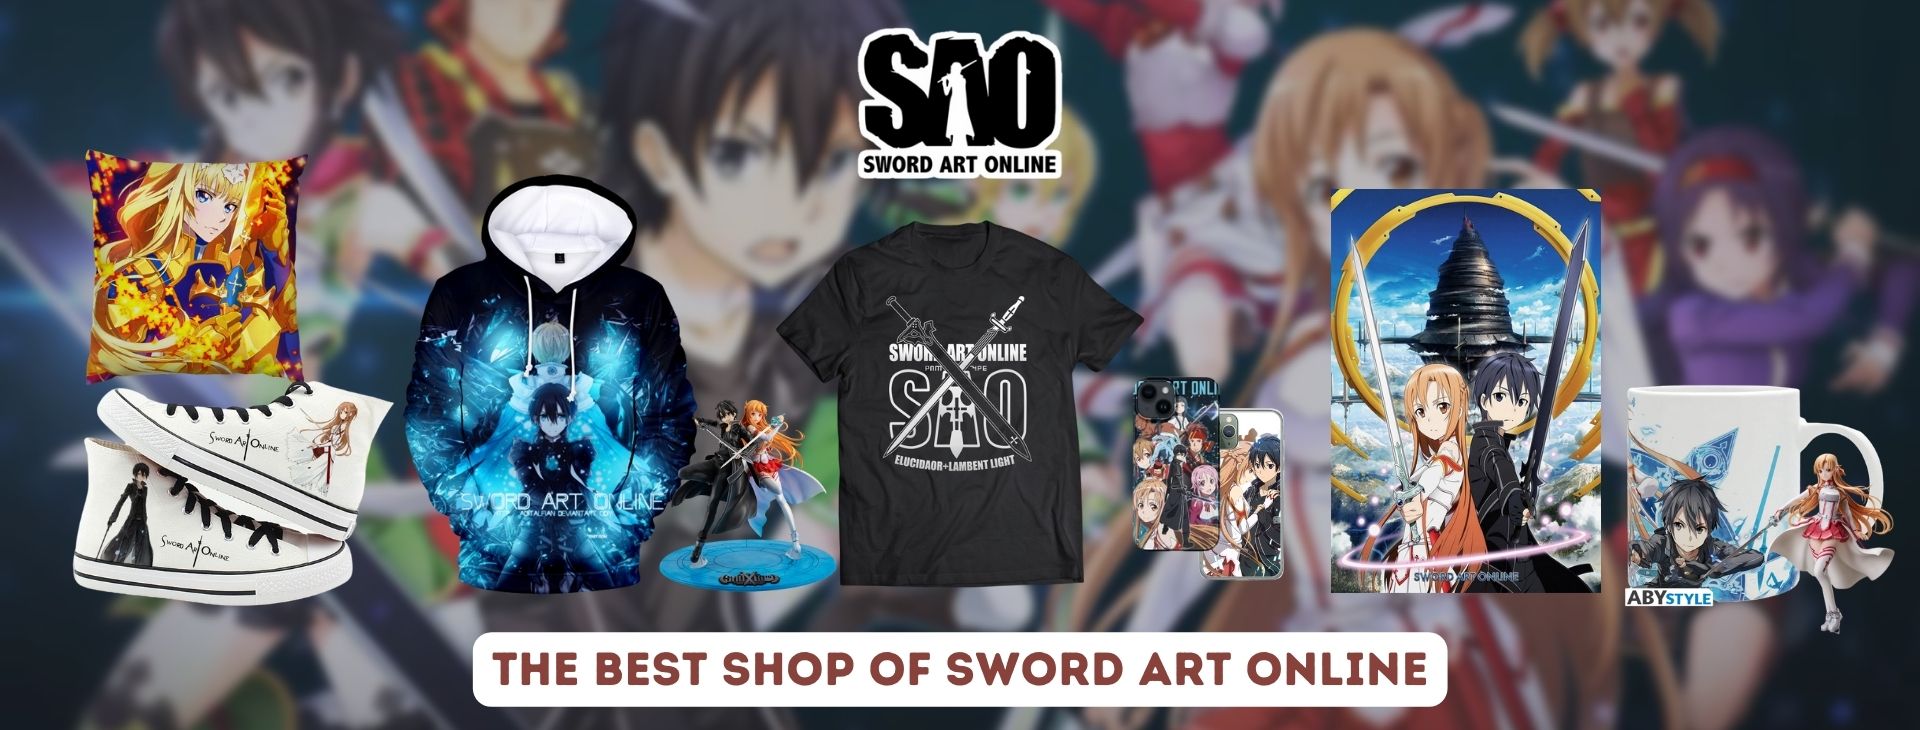 Sword Art Online merch Banner - Sword Art Online Shop